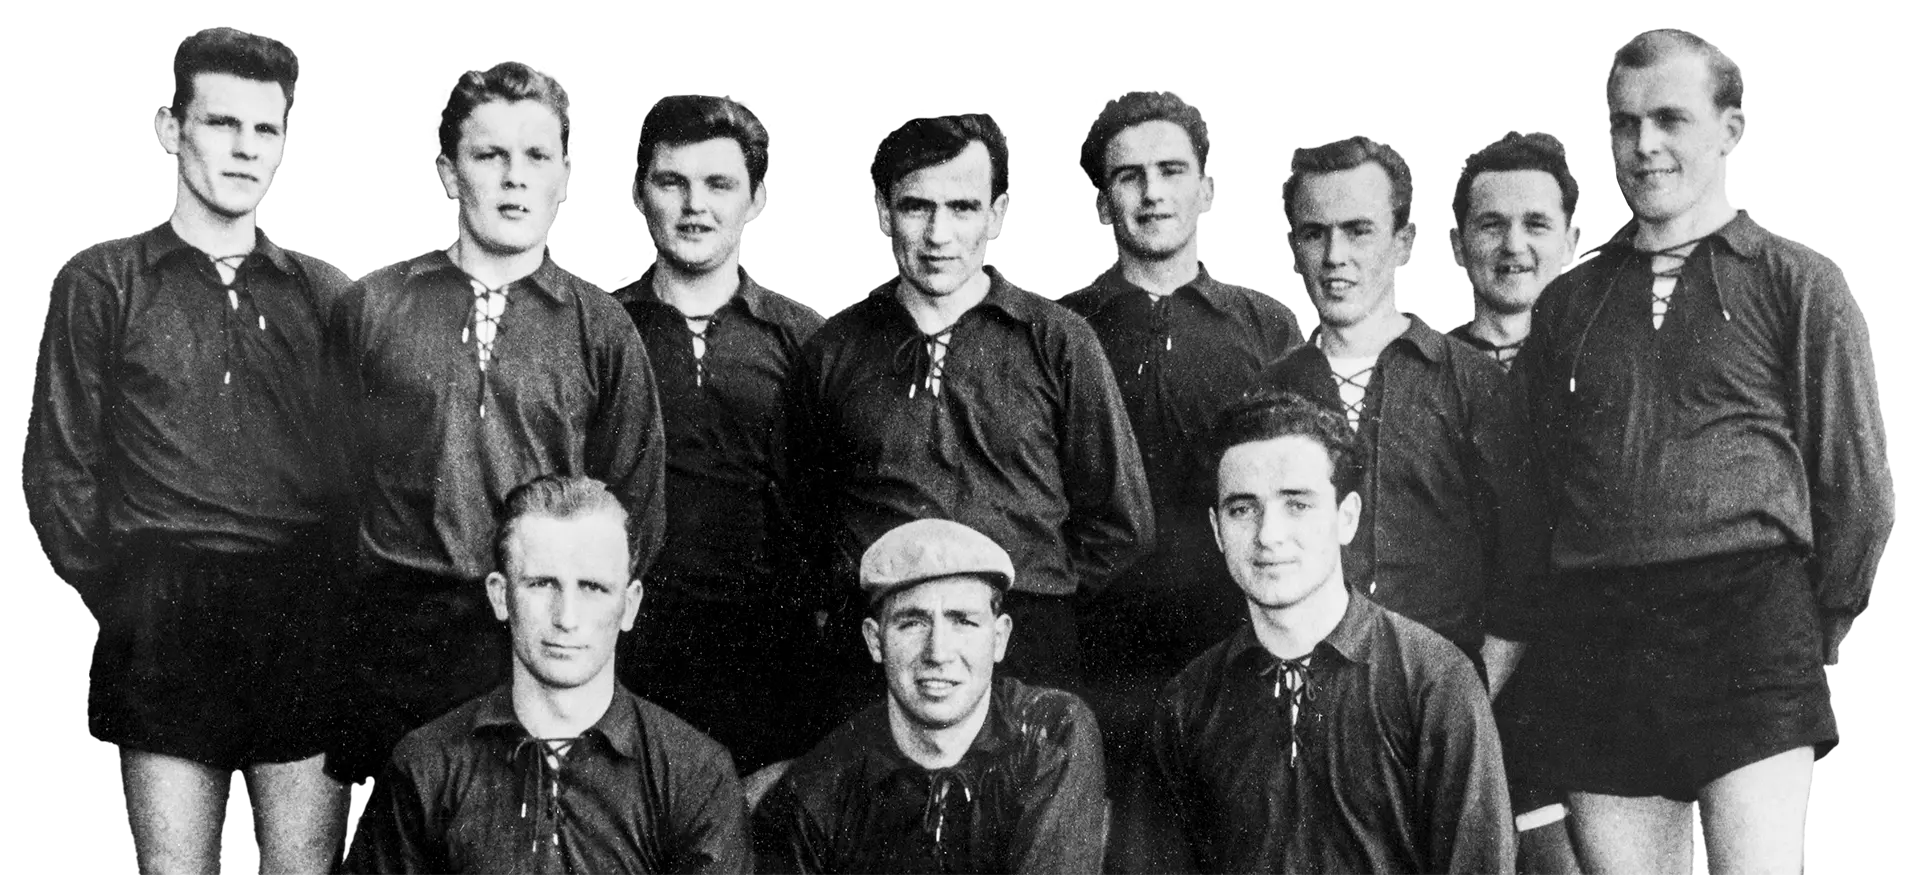 Fußballer aus den 1950er-Jahren in schwarz-weiß